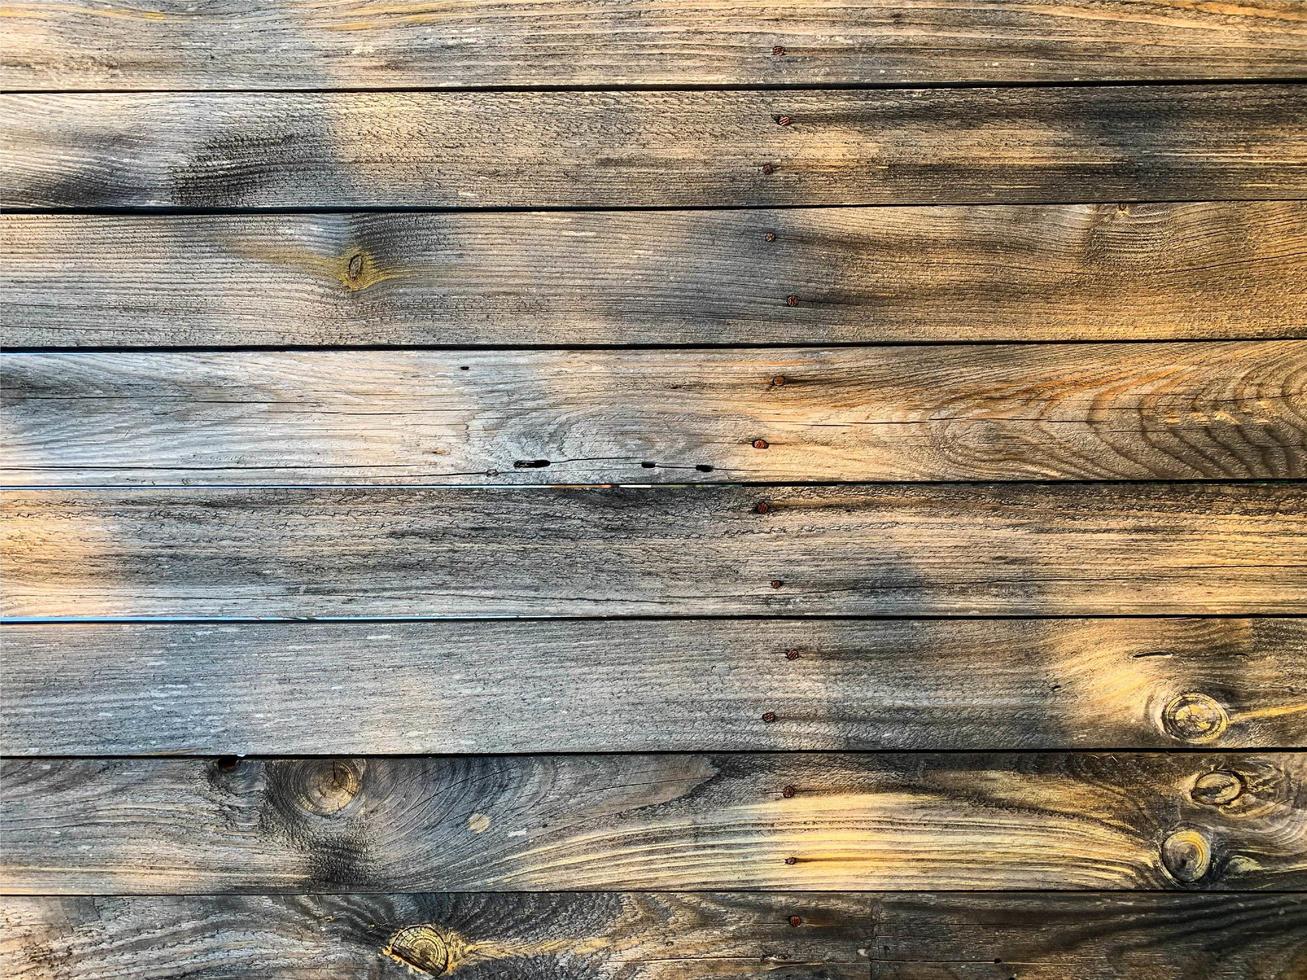 fondo de pared de madera. telón de fondo de la valla. tablón de madera foto